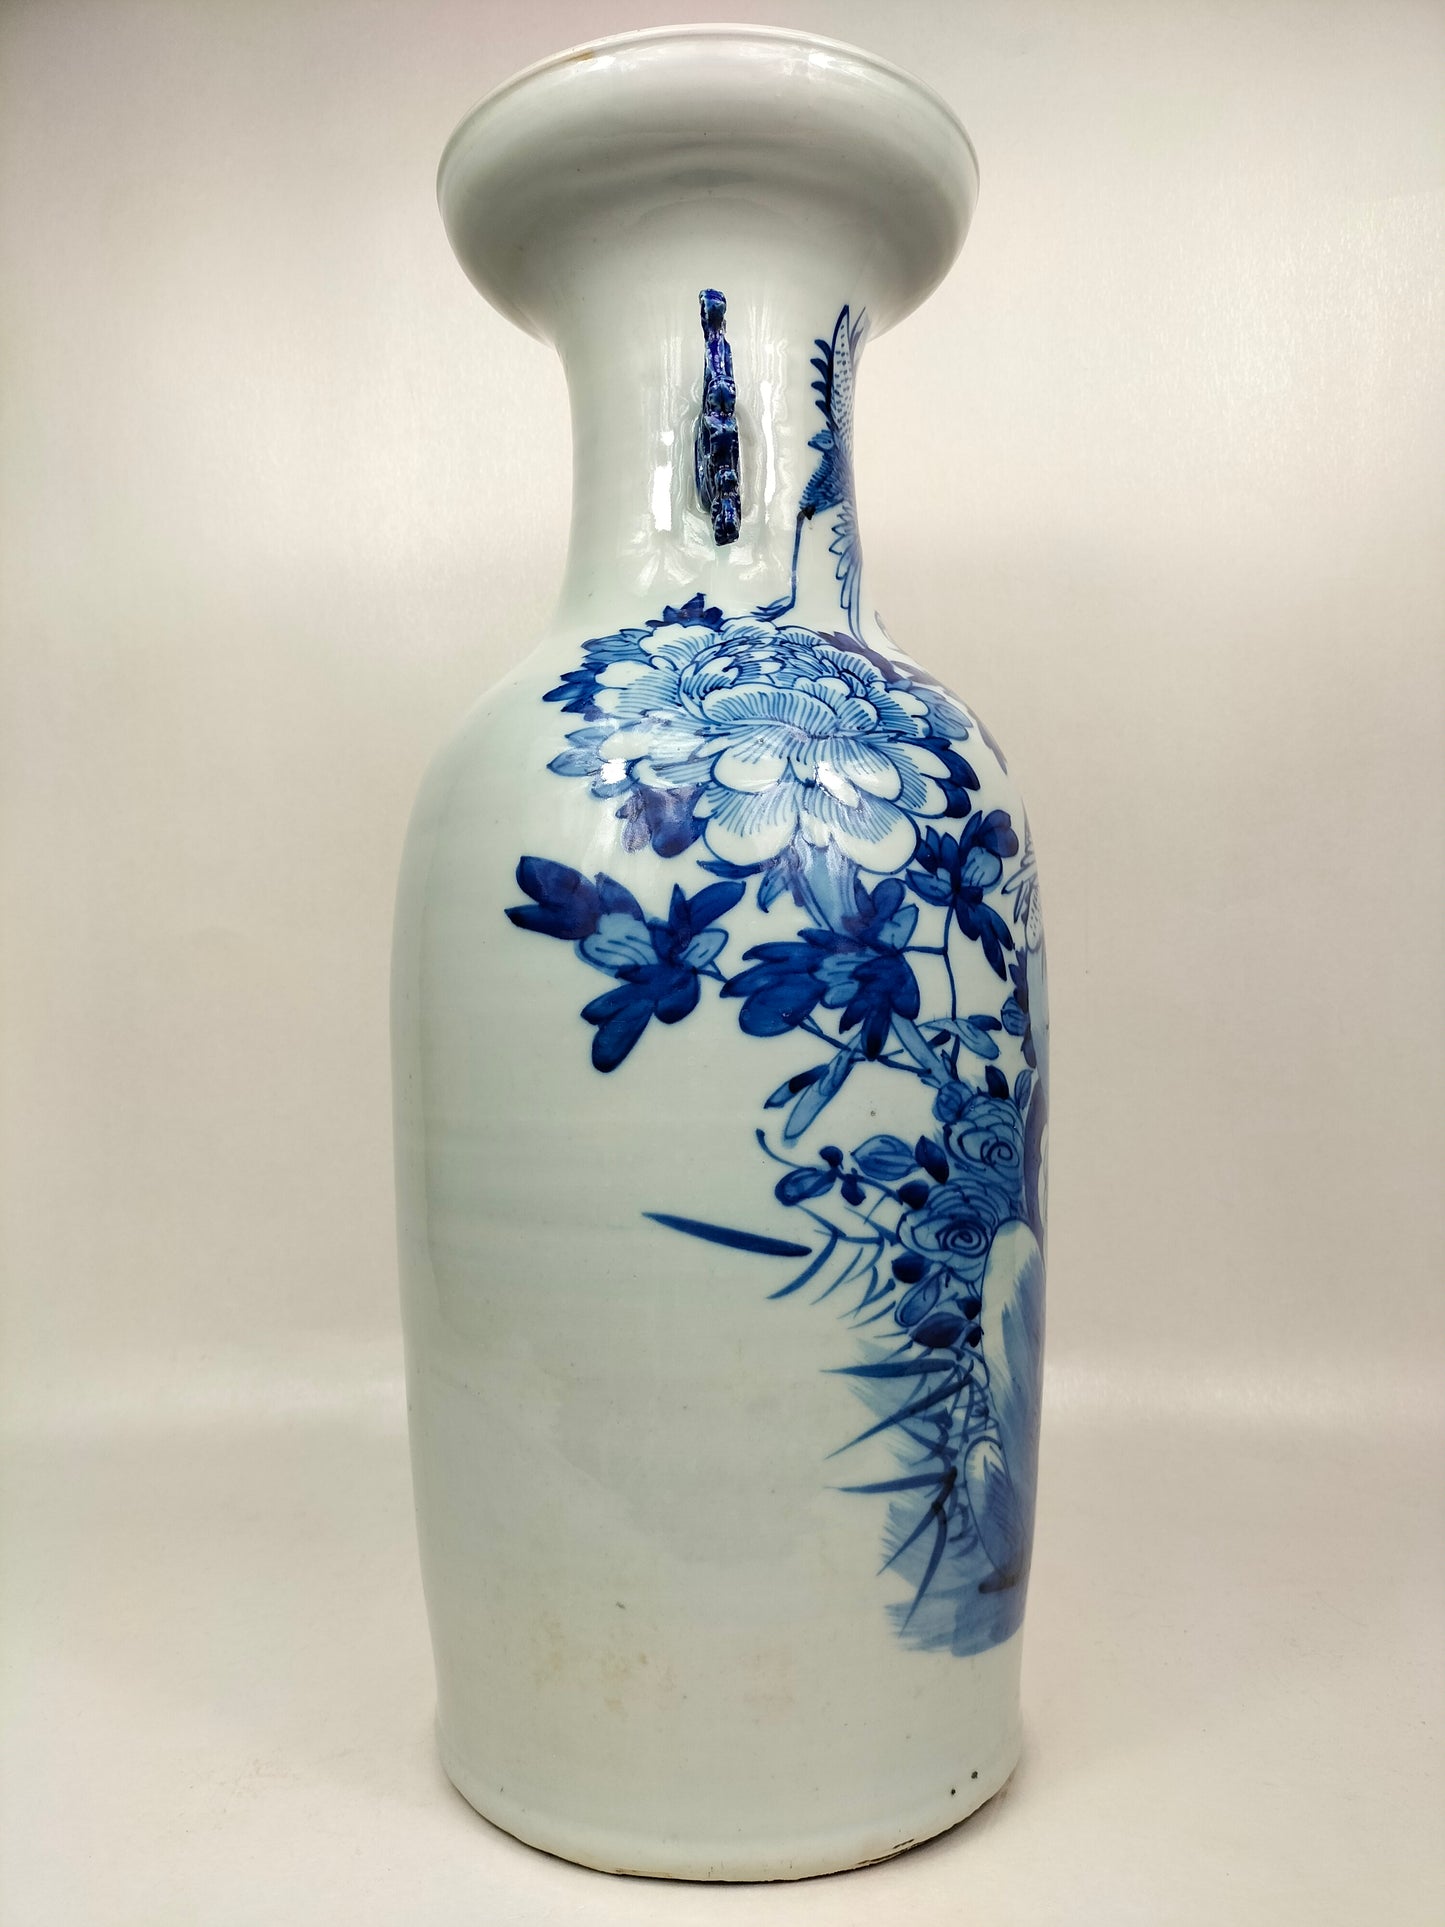 Grande vaso chinês antigo com guindastes e flores // Azul e branco - Dinastia Qing - século XIX